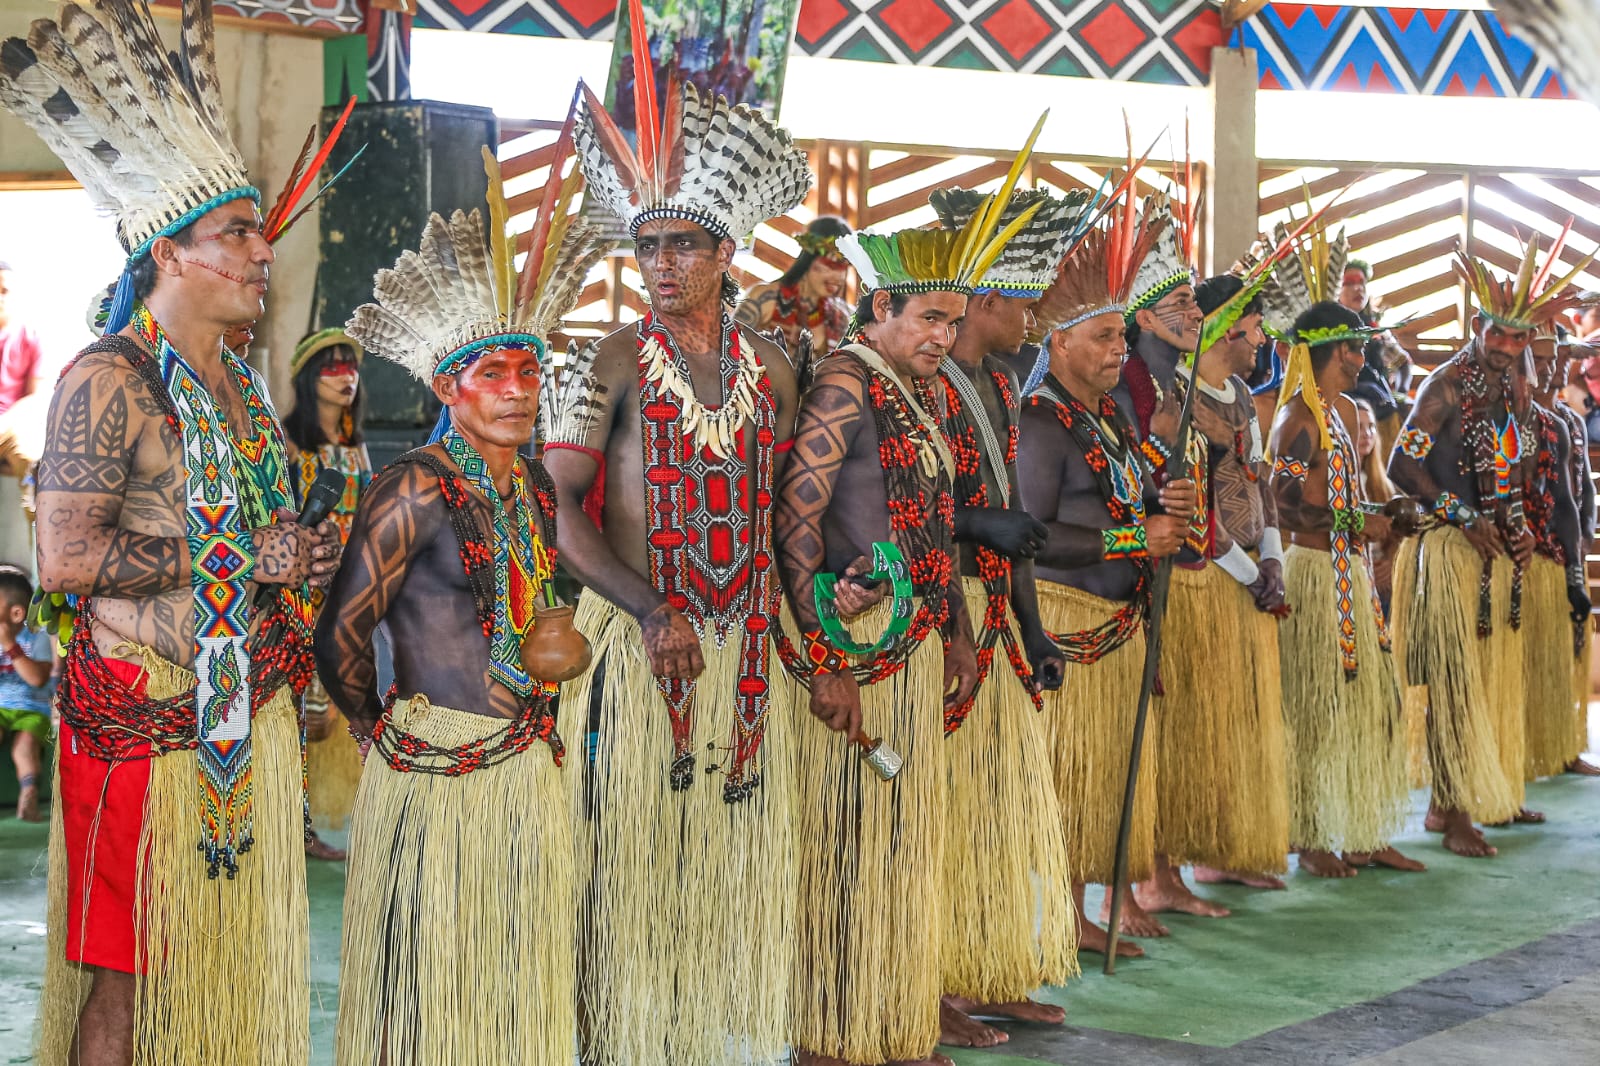 The Puyanawa tribe